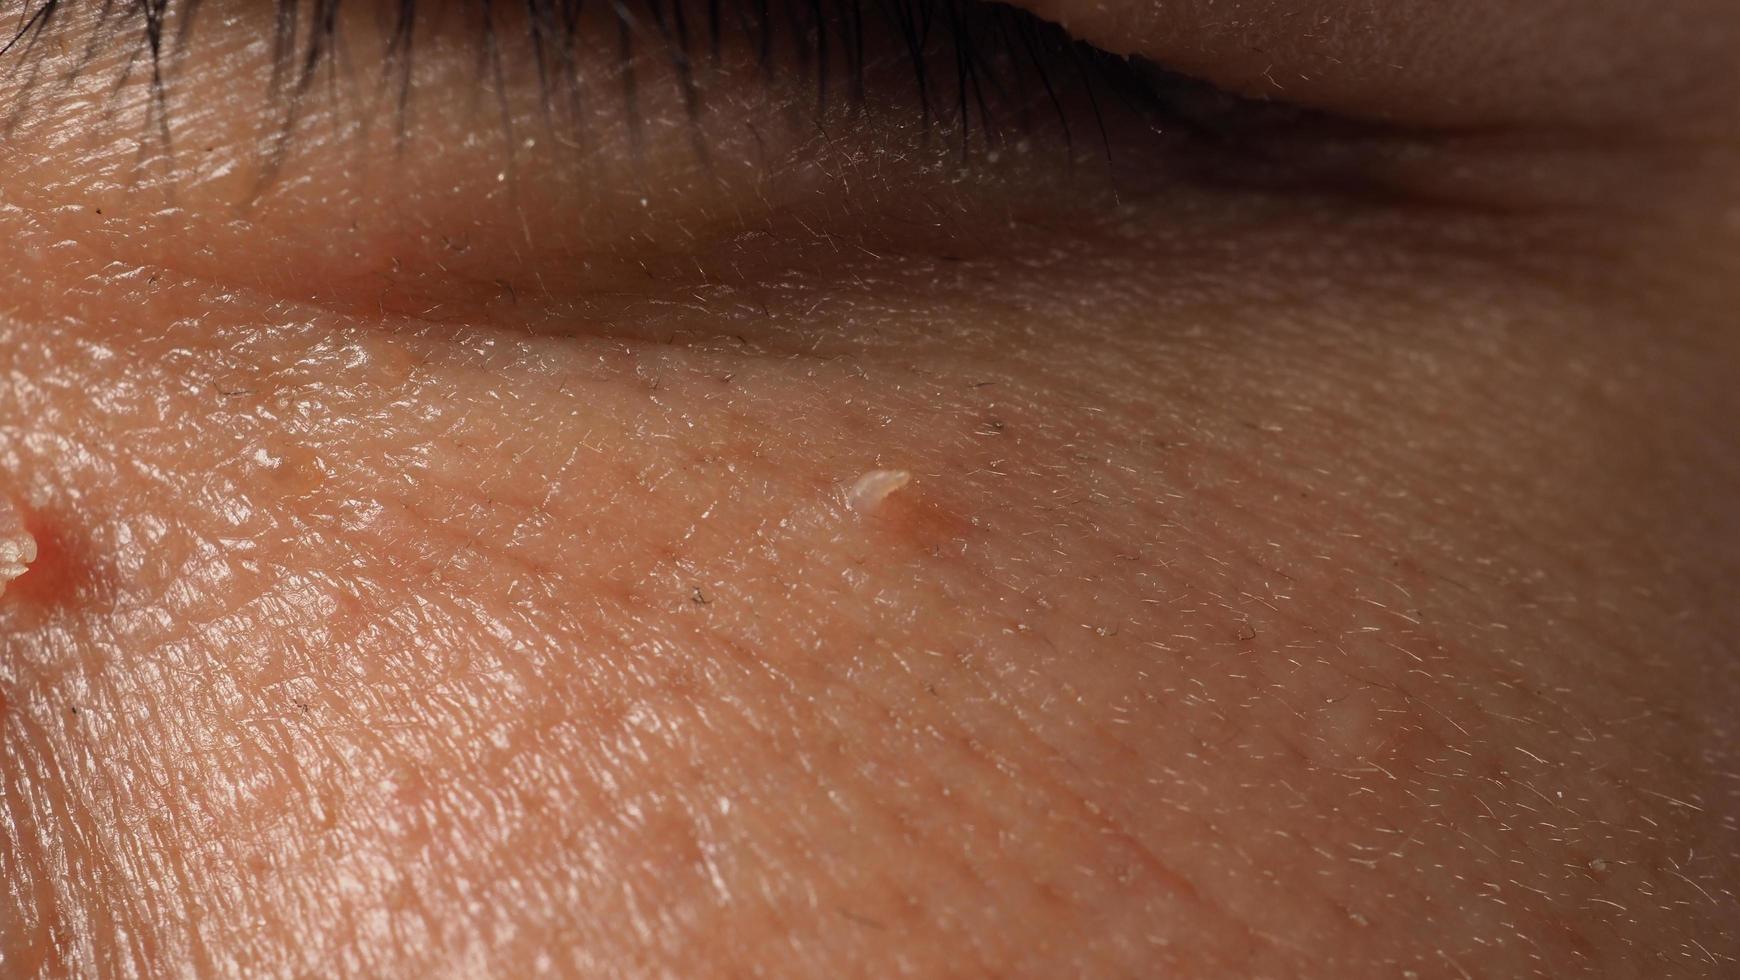 vårta i ansiktet. makrobild av vårta nära ögat. papillom på huden. foto